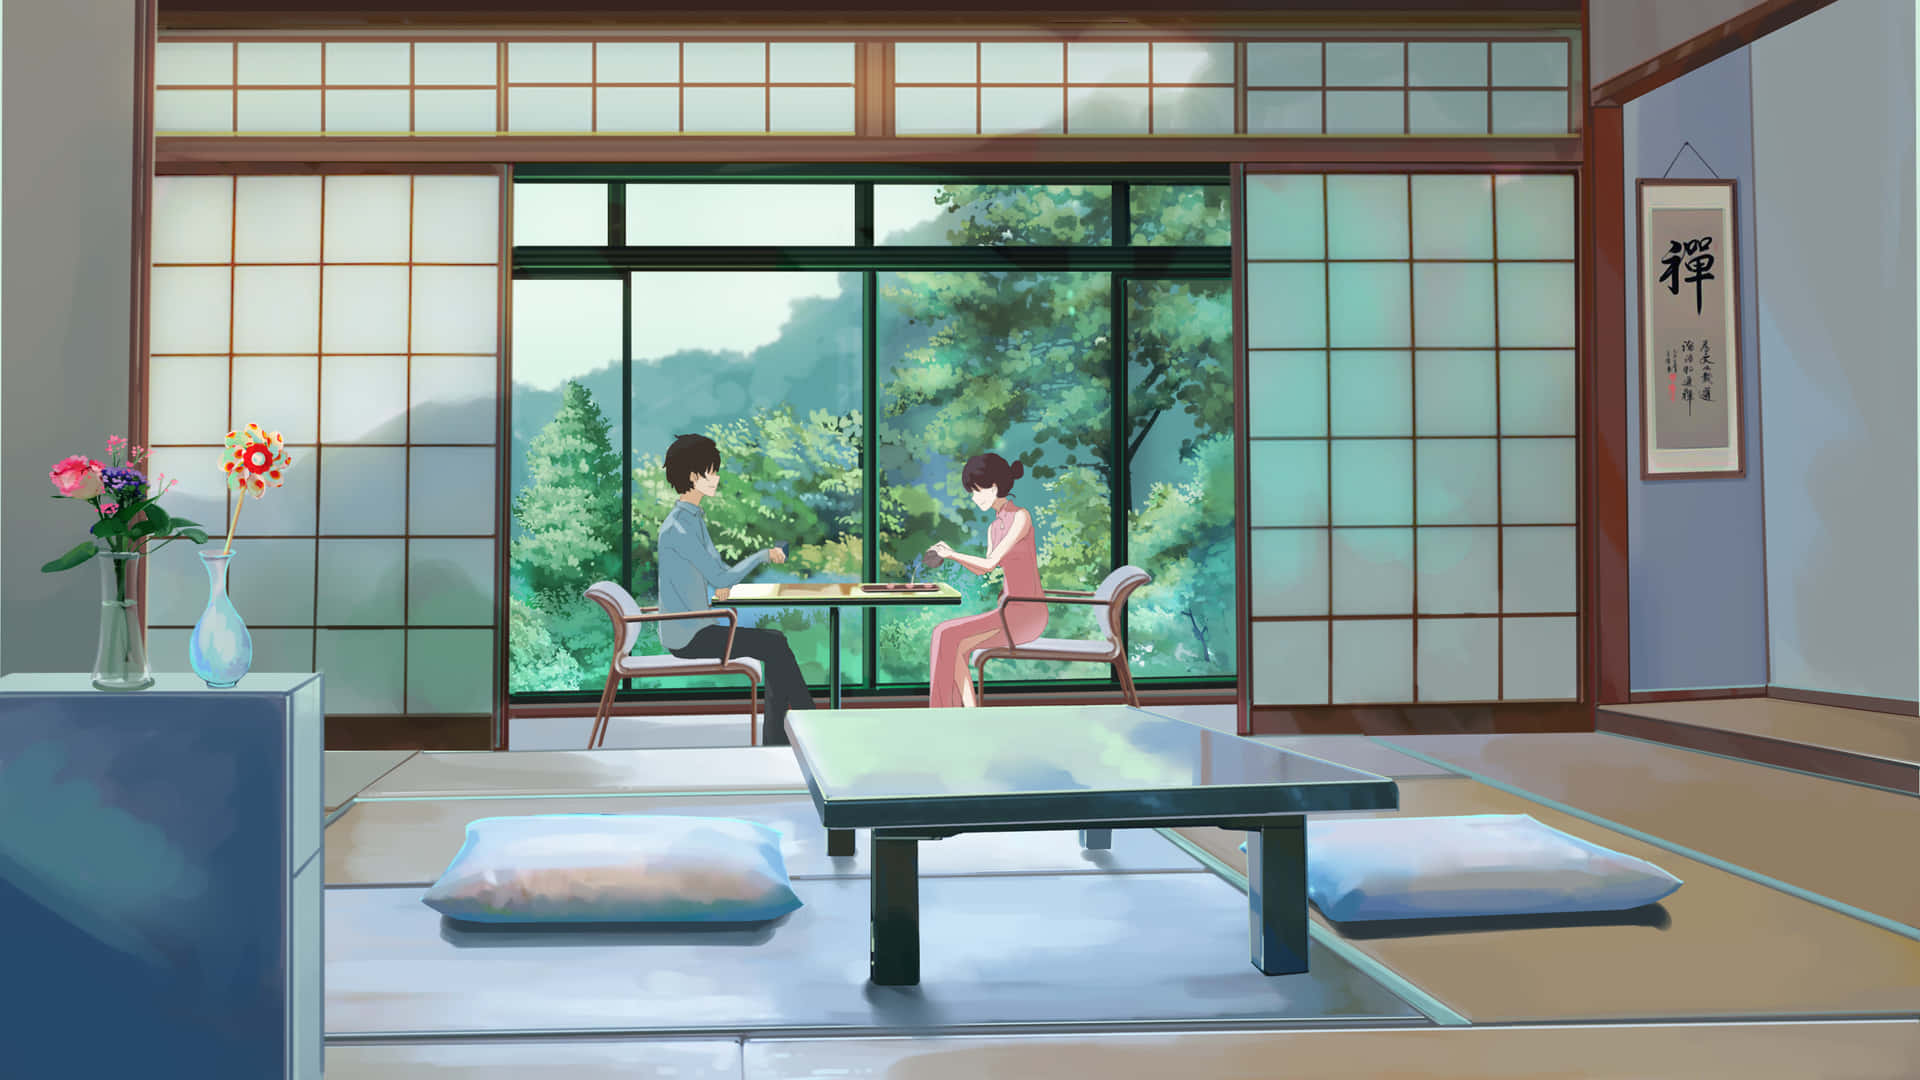 Unaacogedora Habitación De Anime Para Relajarse Y Perderse En El Fandom.